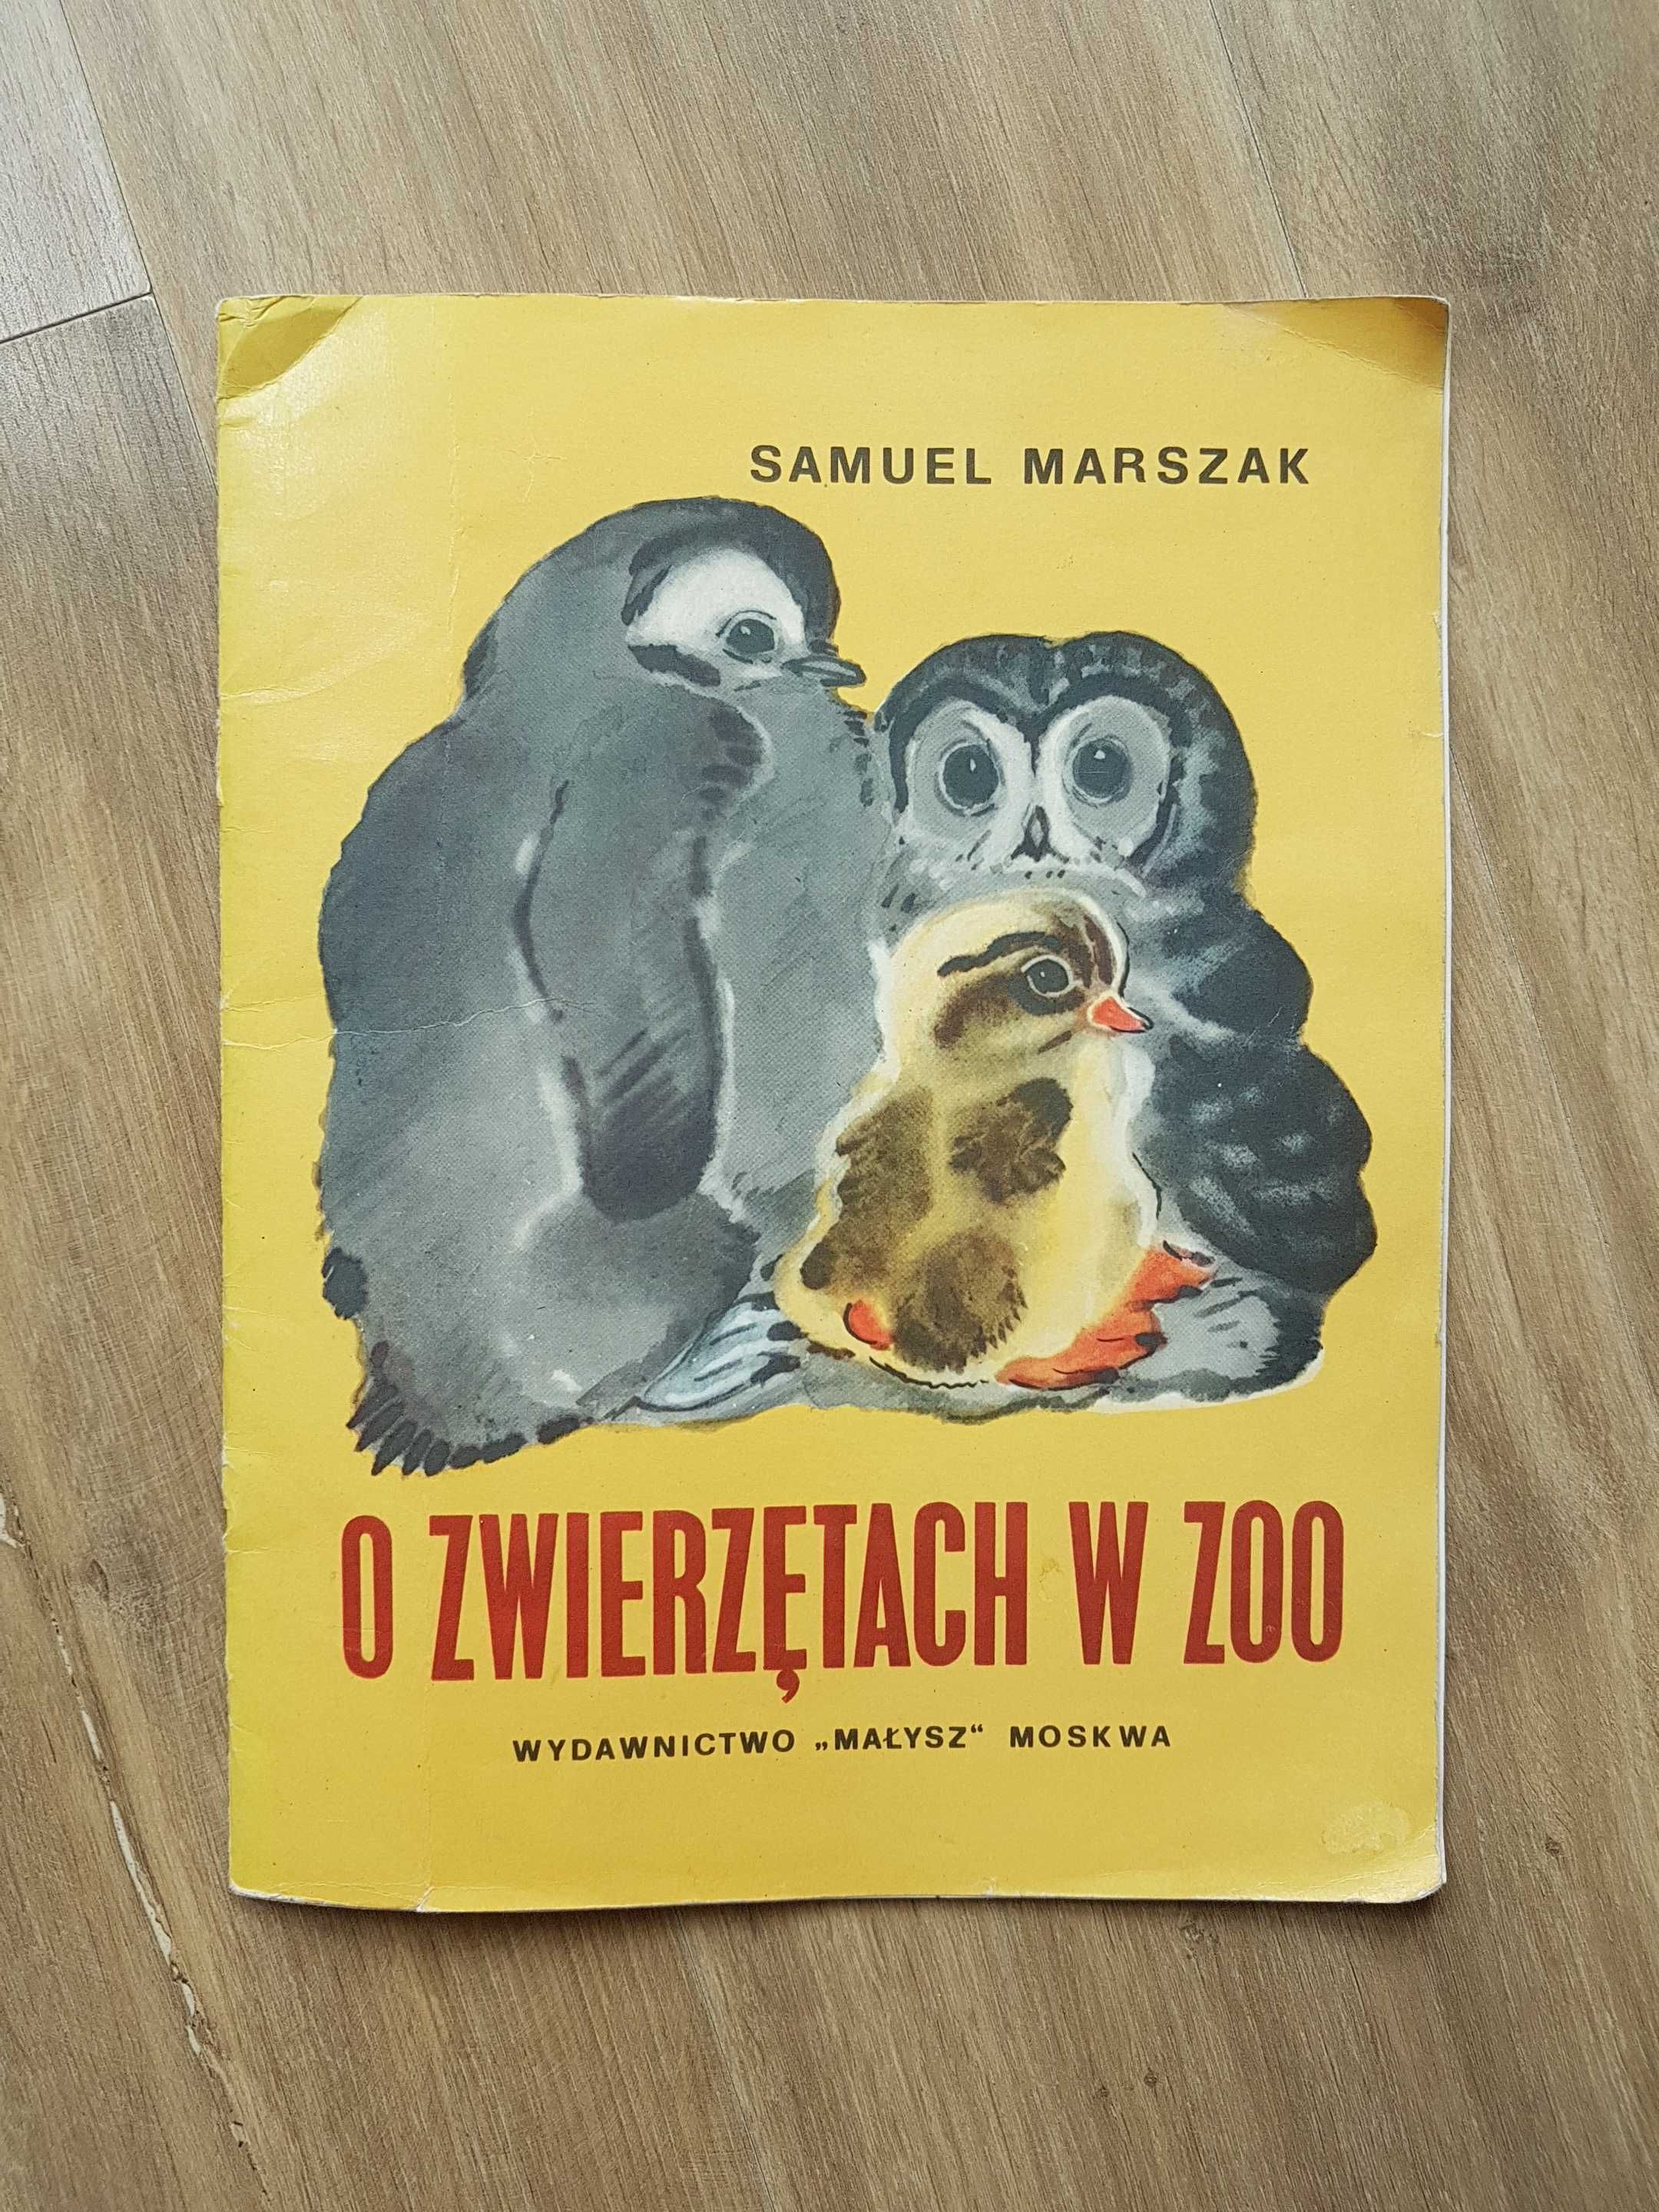 O zwierzętach w zoo Samuel Marszak wiersze Bajki PRL 1981 r ,,Małysz,,